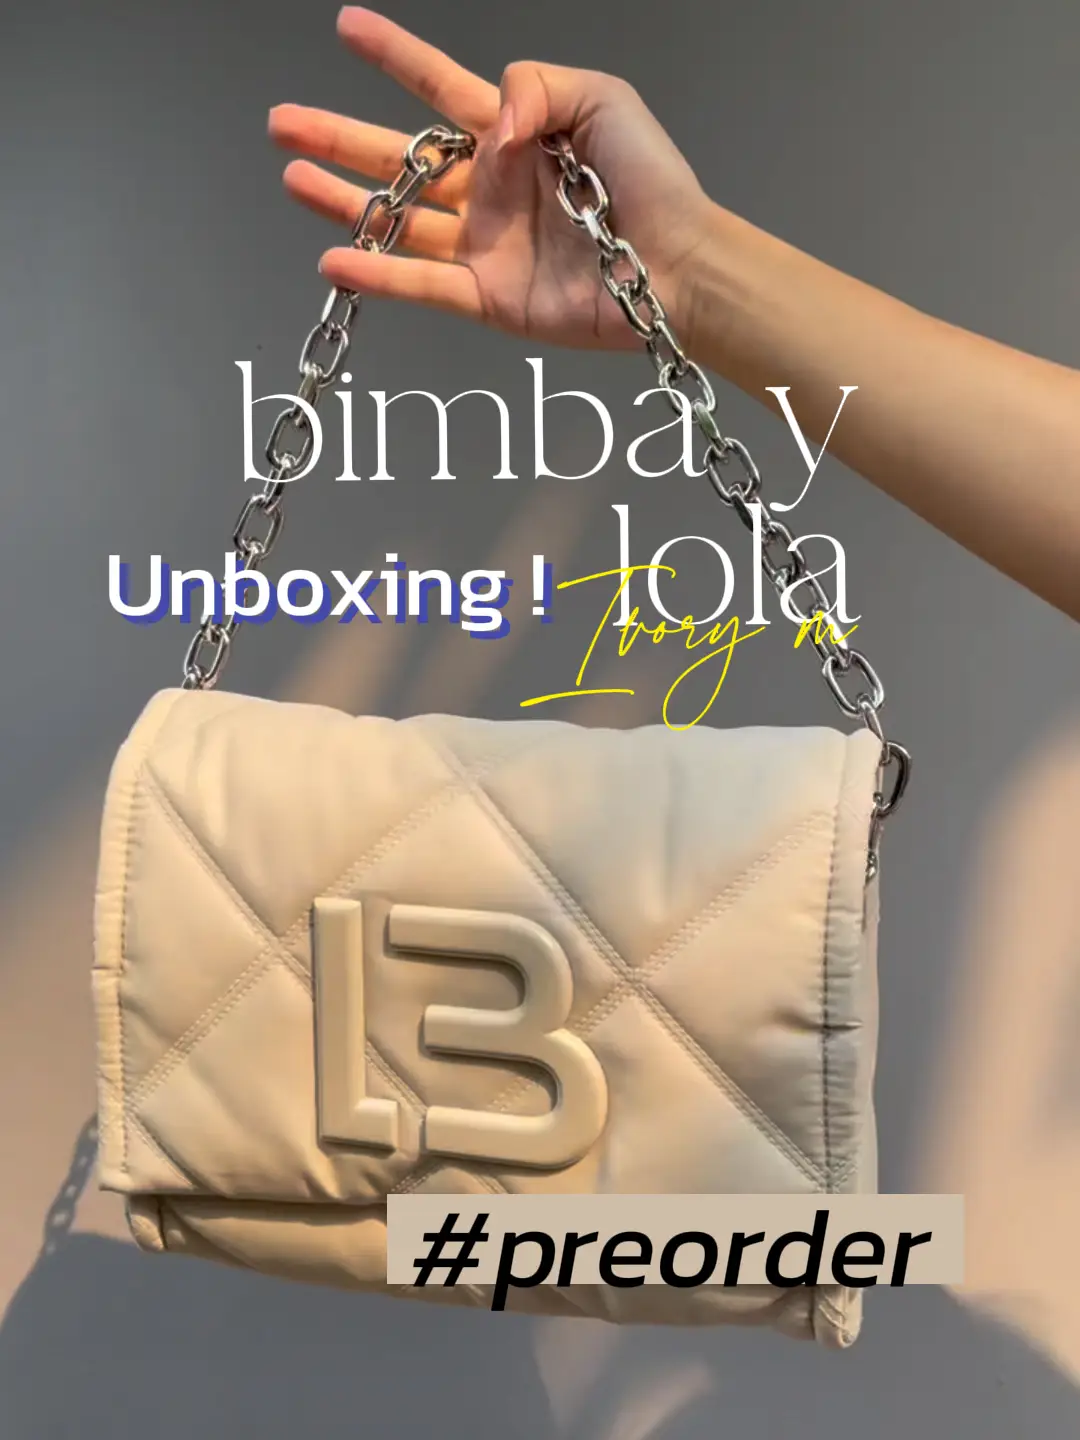 bimba y lola nylon shopper bag ivory I review I unboxing